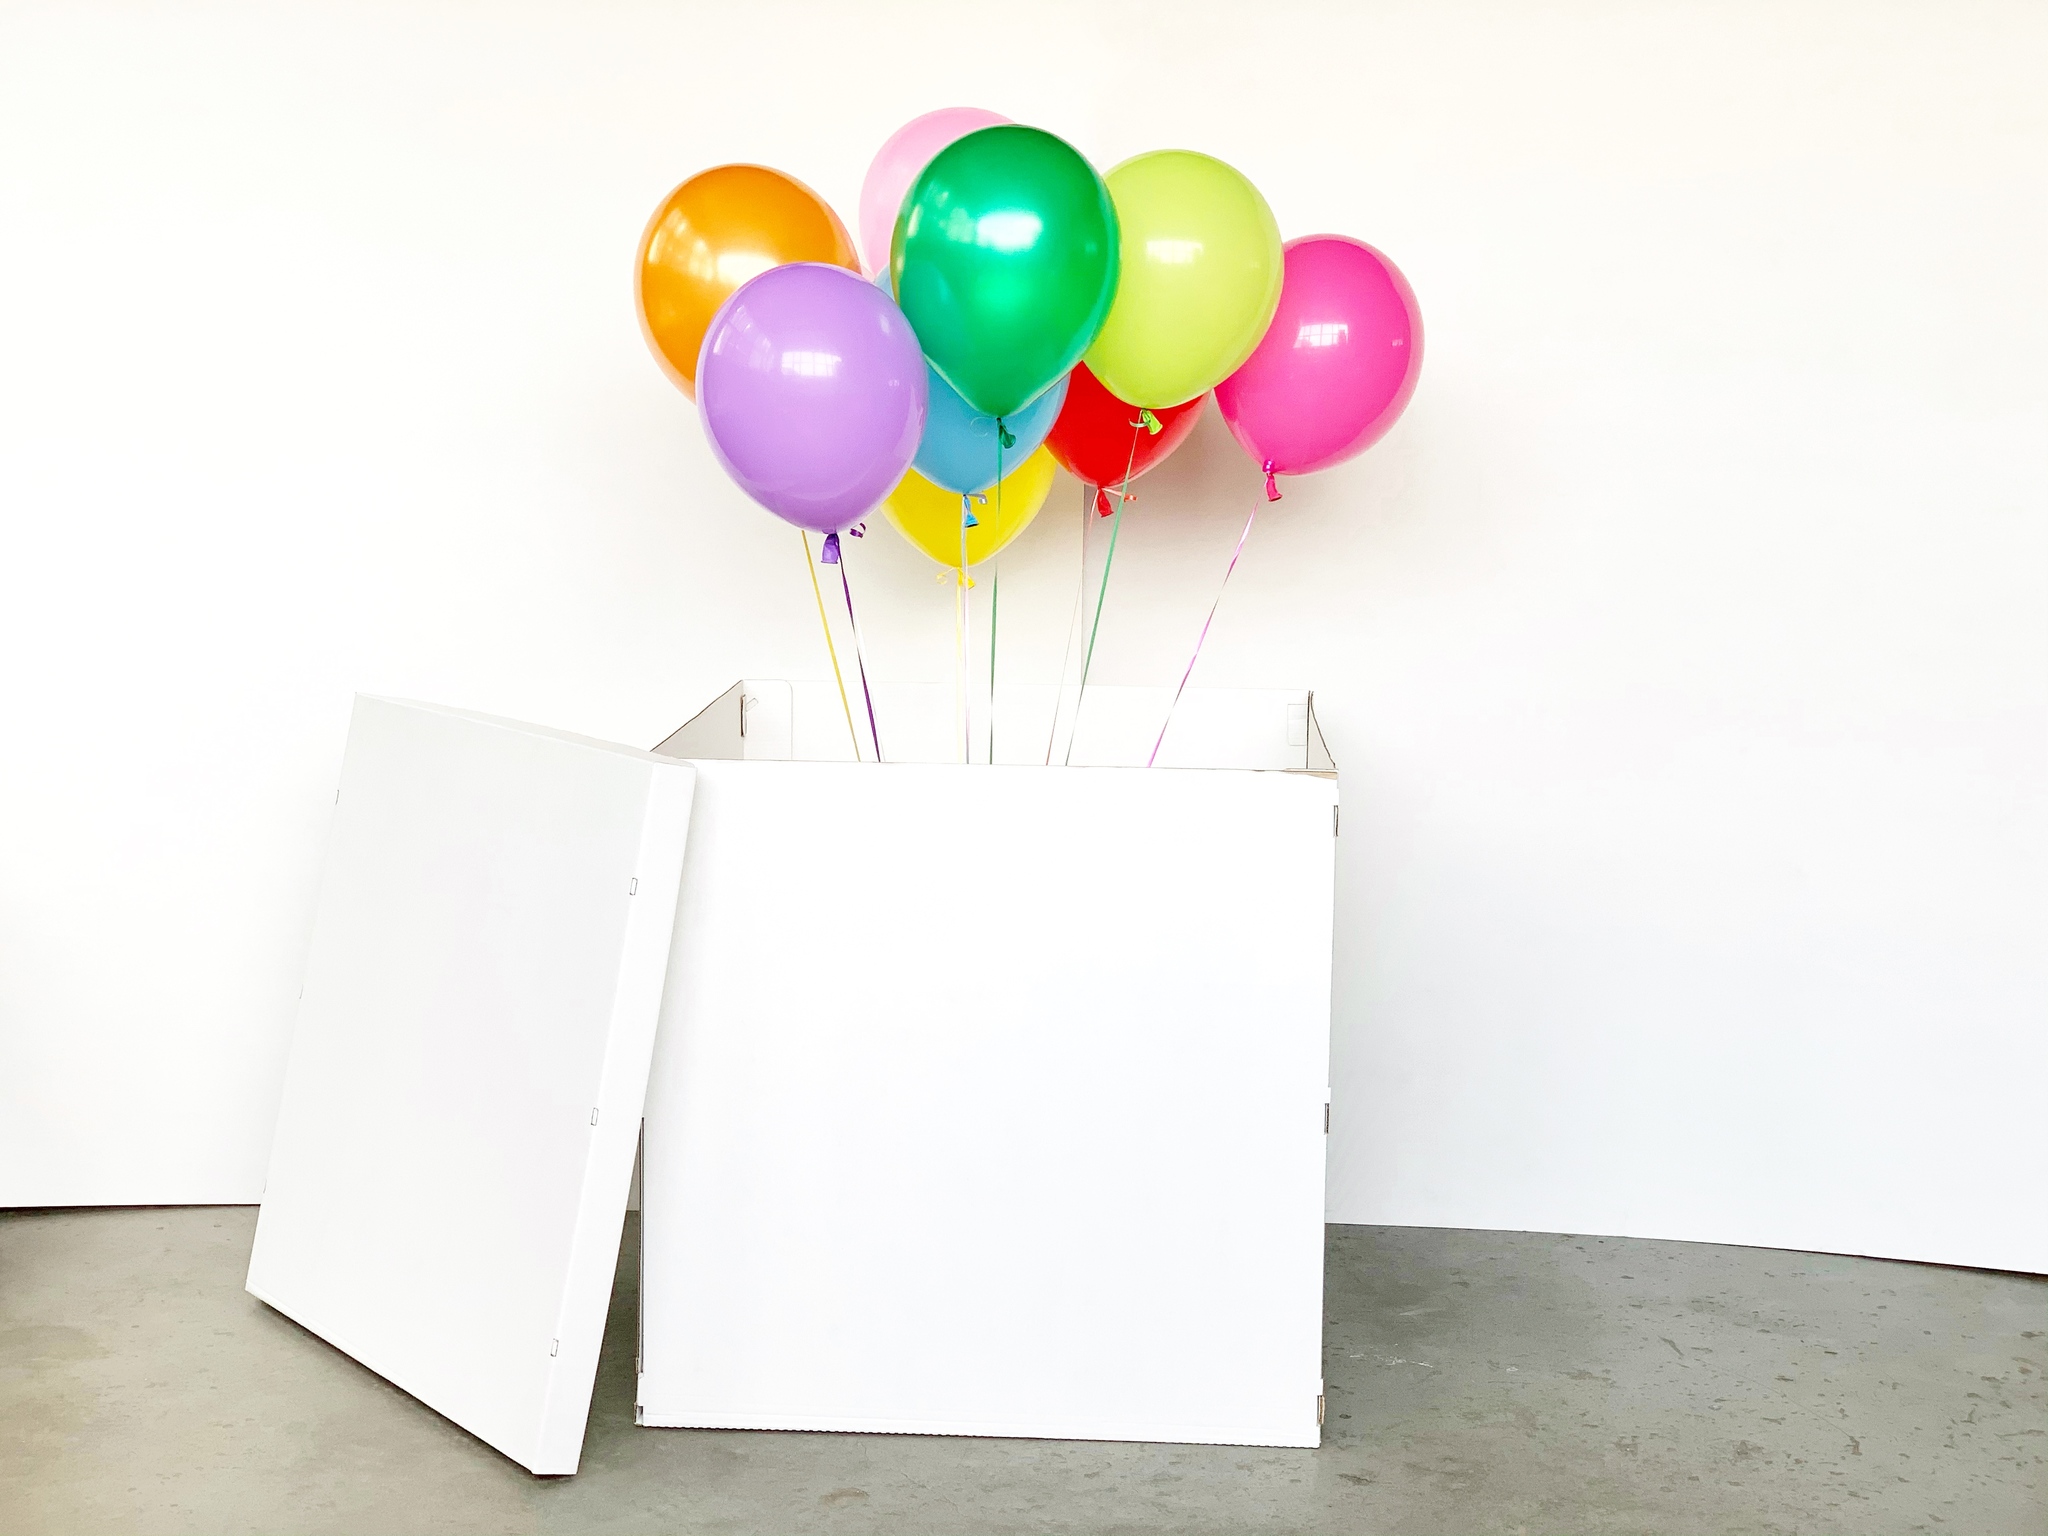 Коробка-сюрприз или как удивить с помощью воздушных шаров